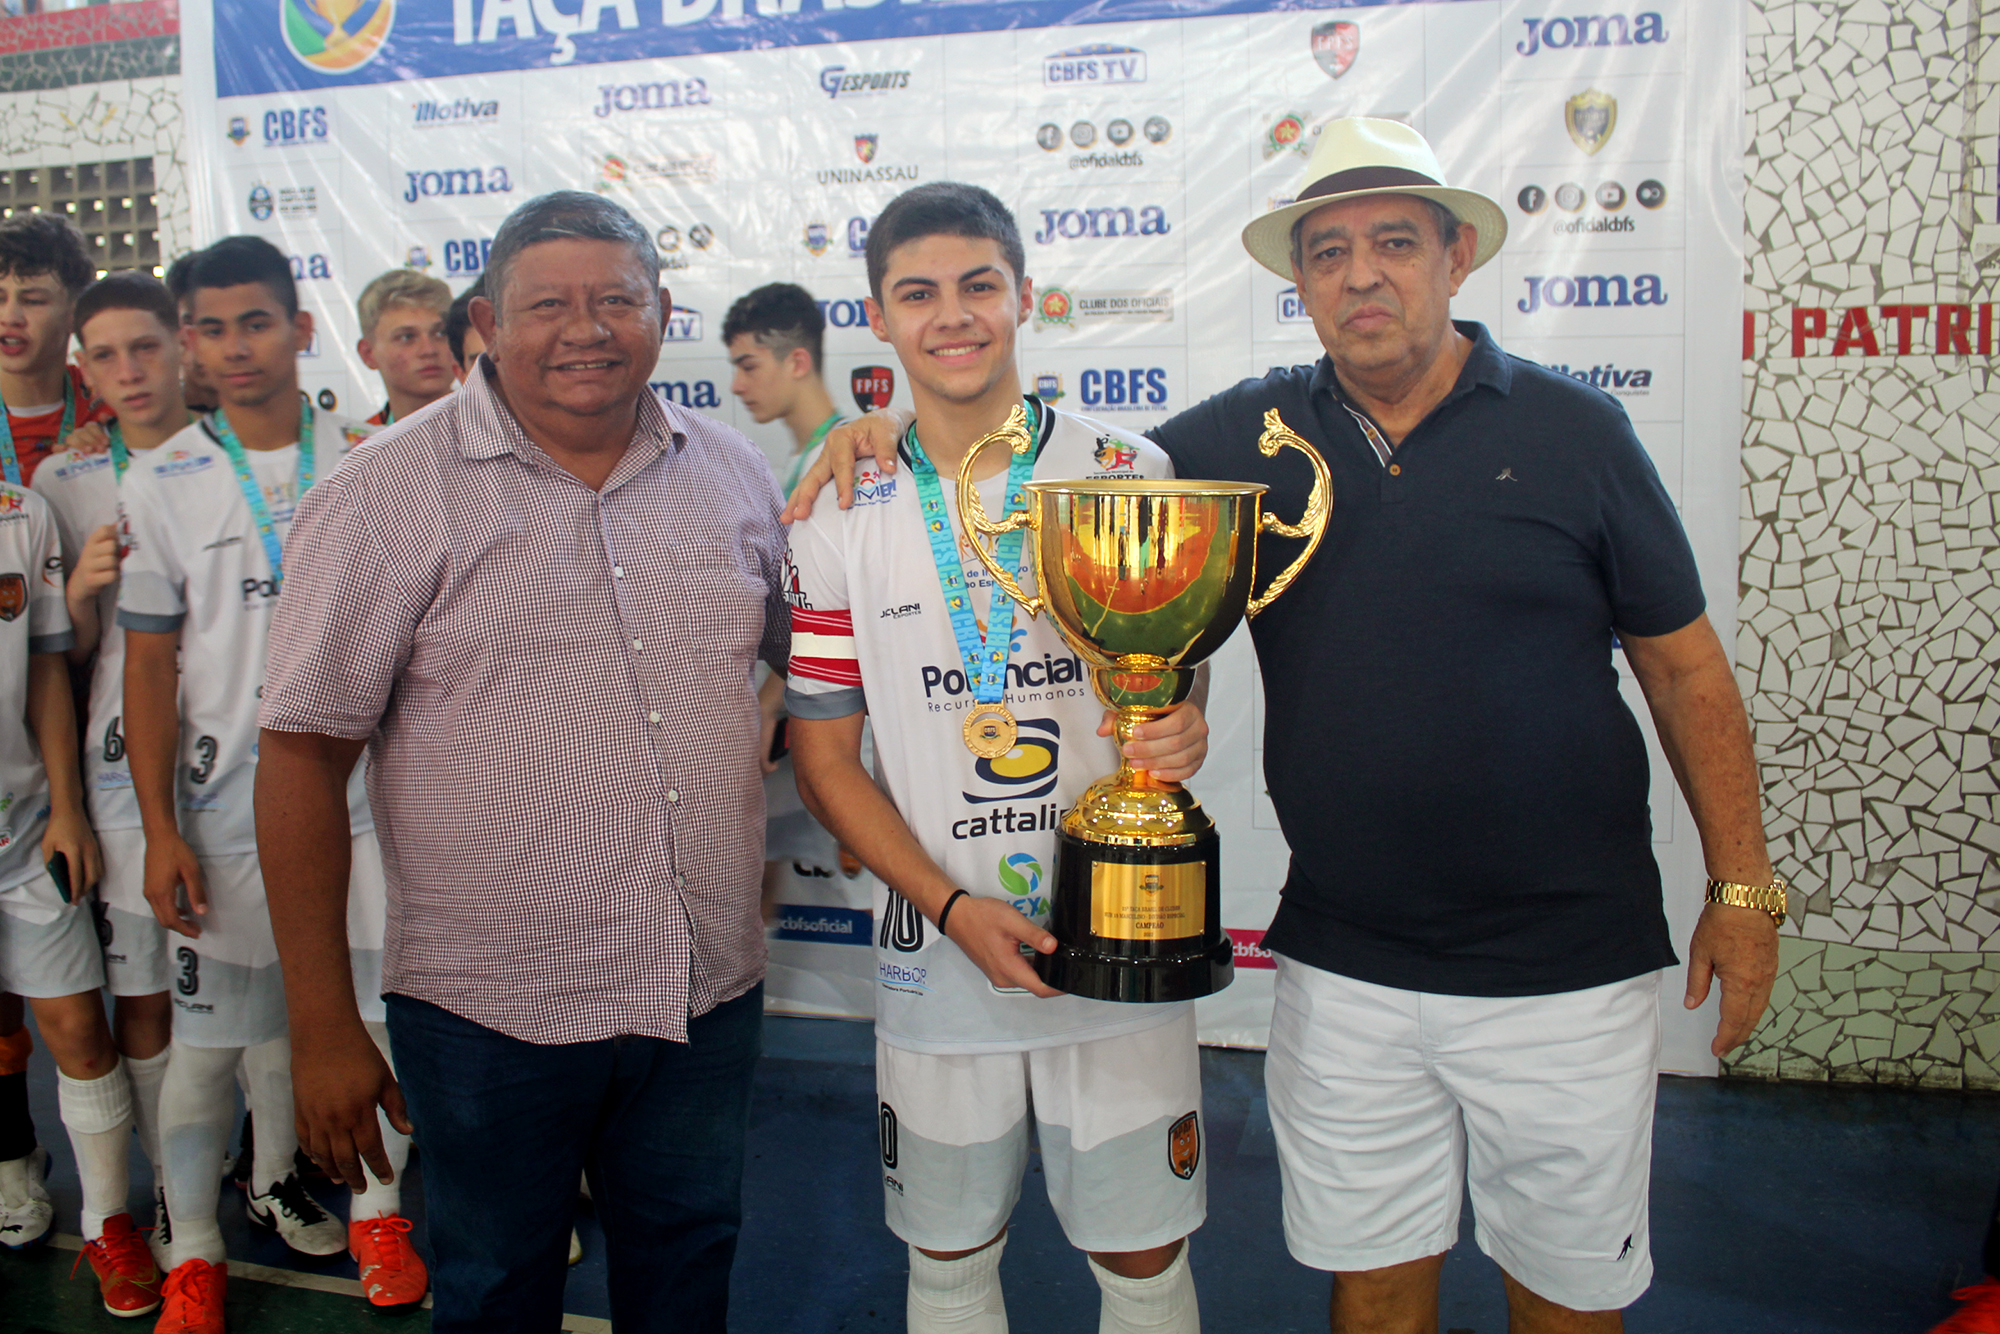 Taça Brasil chega ao final no Clube dos Oficiais e título fica com a APAF-PR